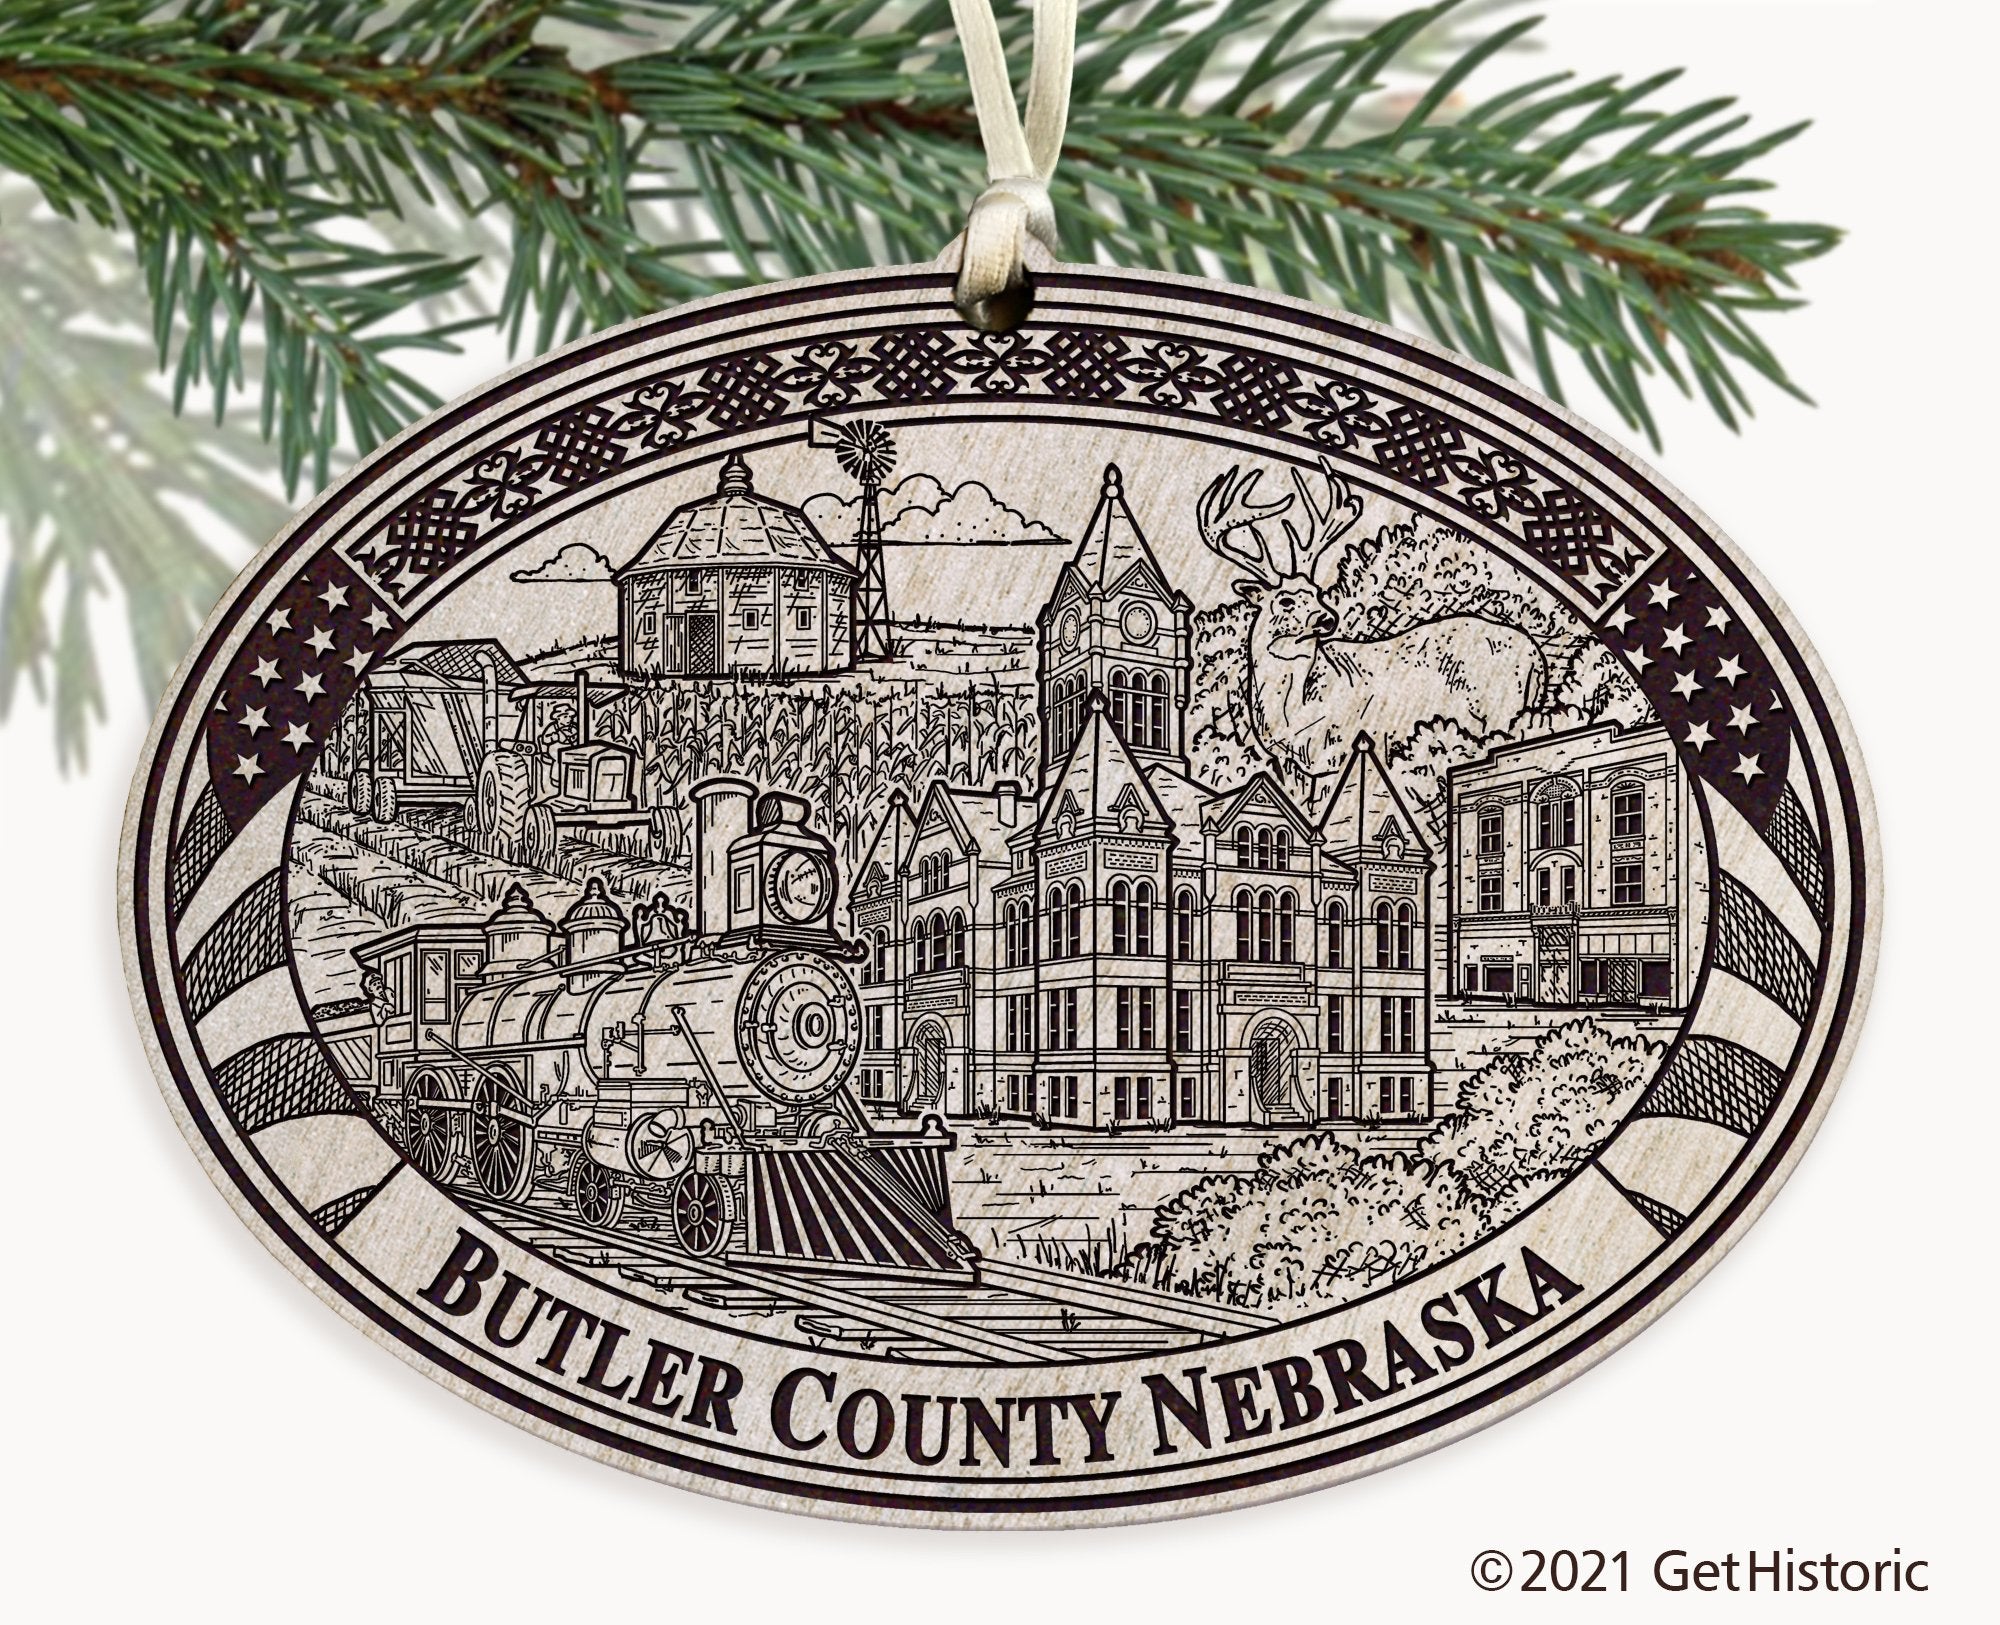 Butler County Nebraska Engraved Ornament